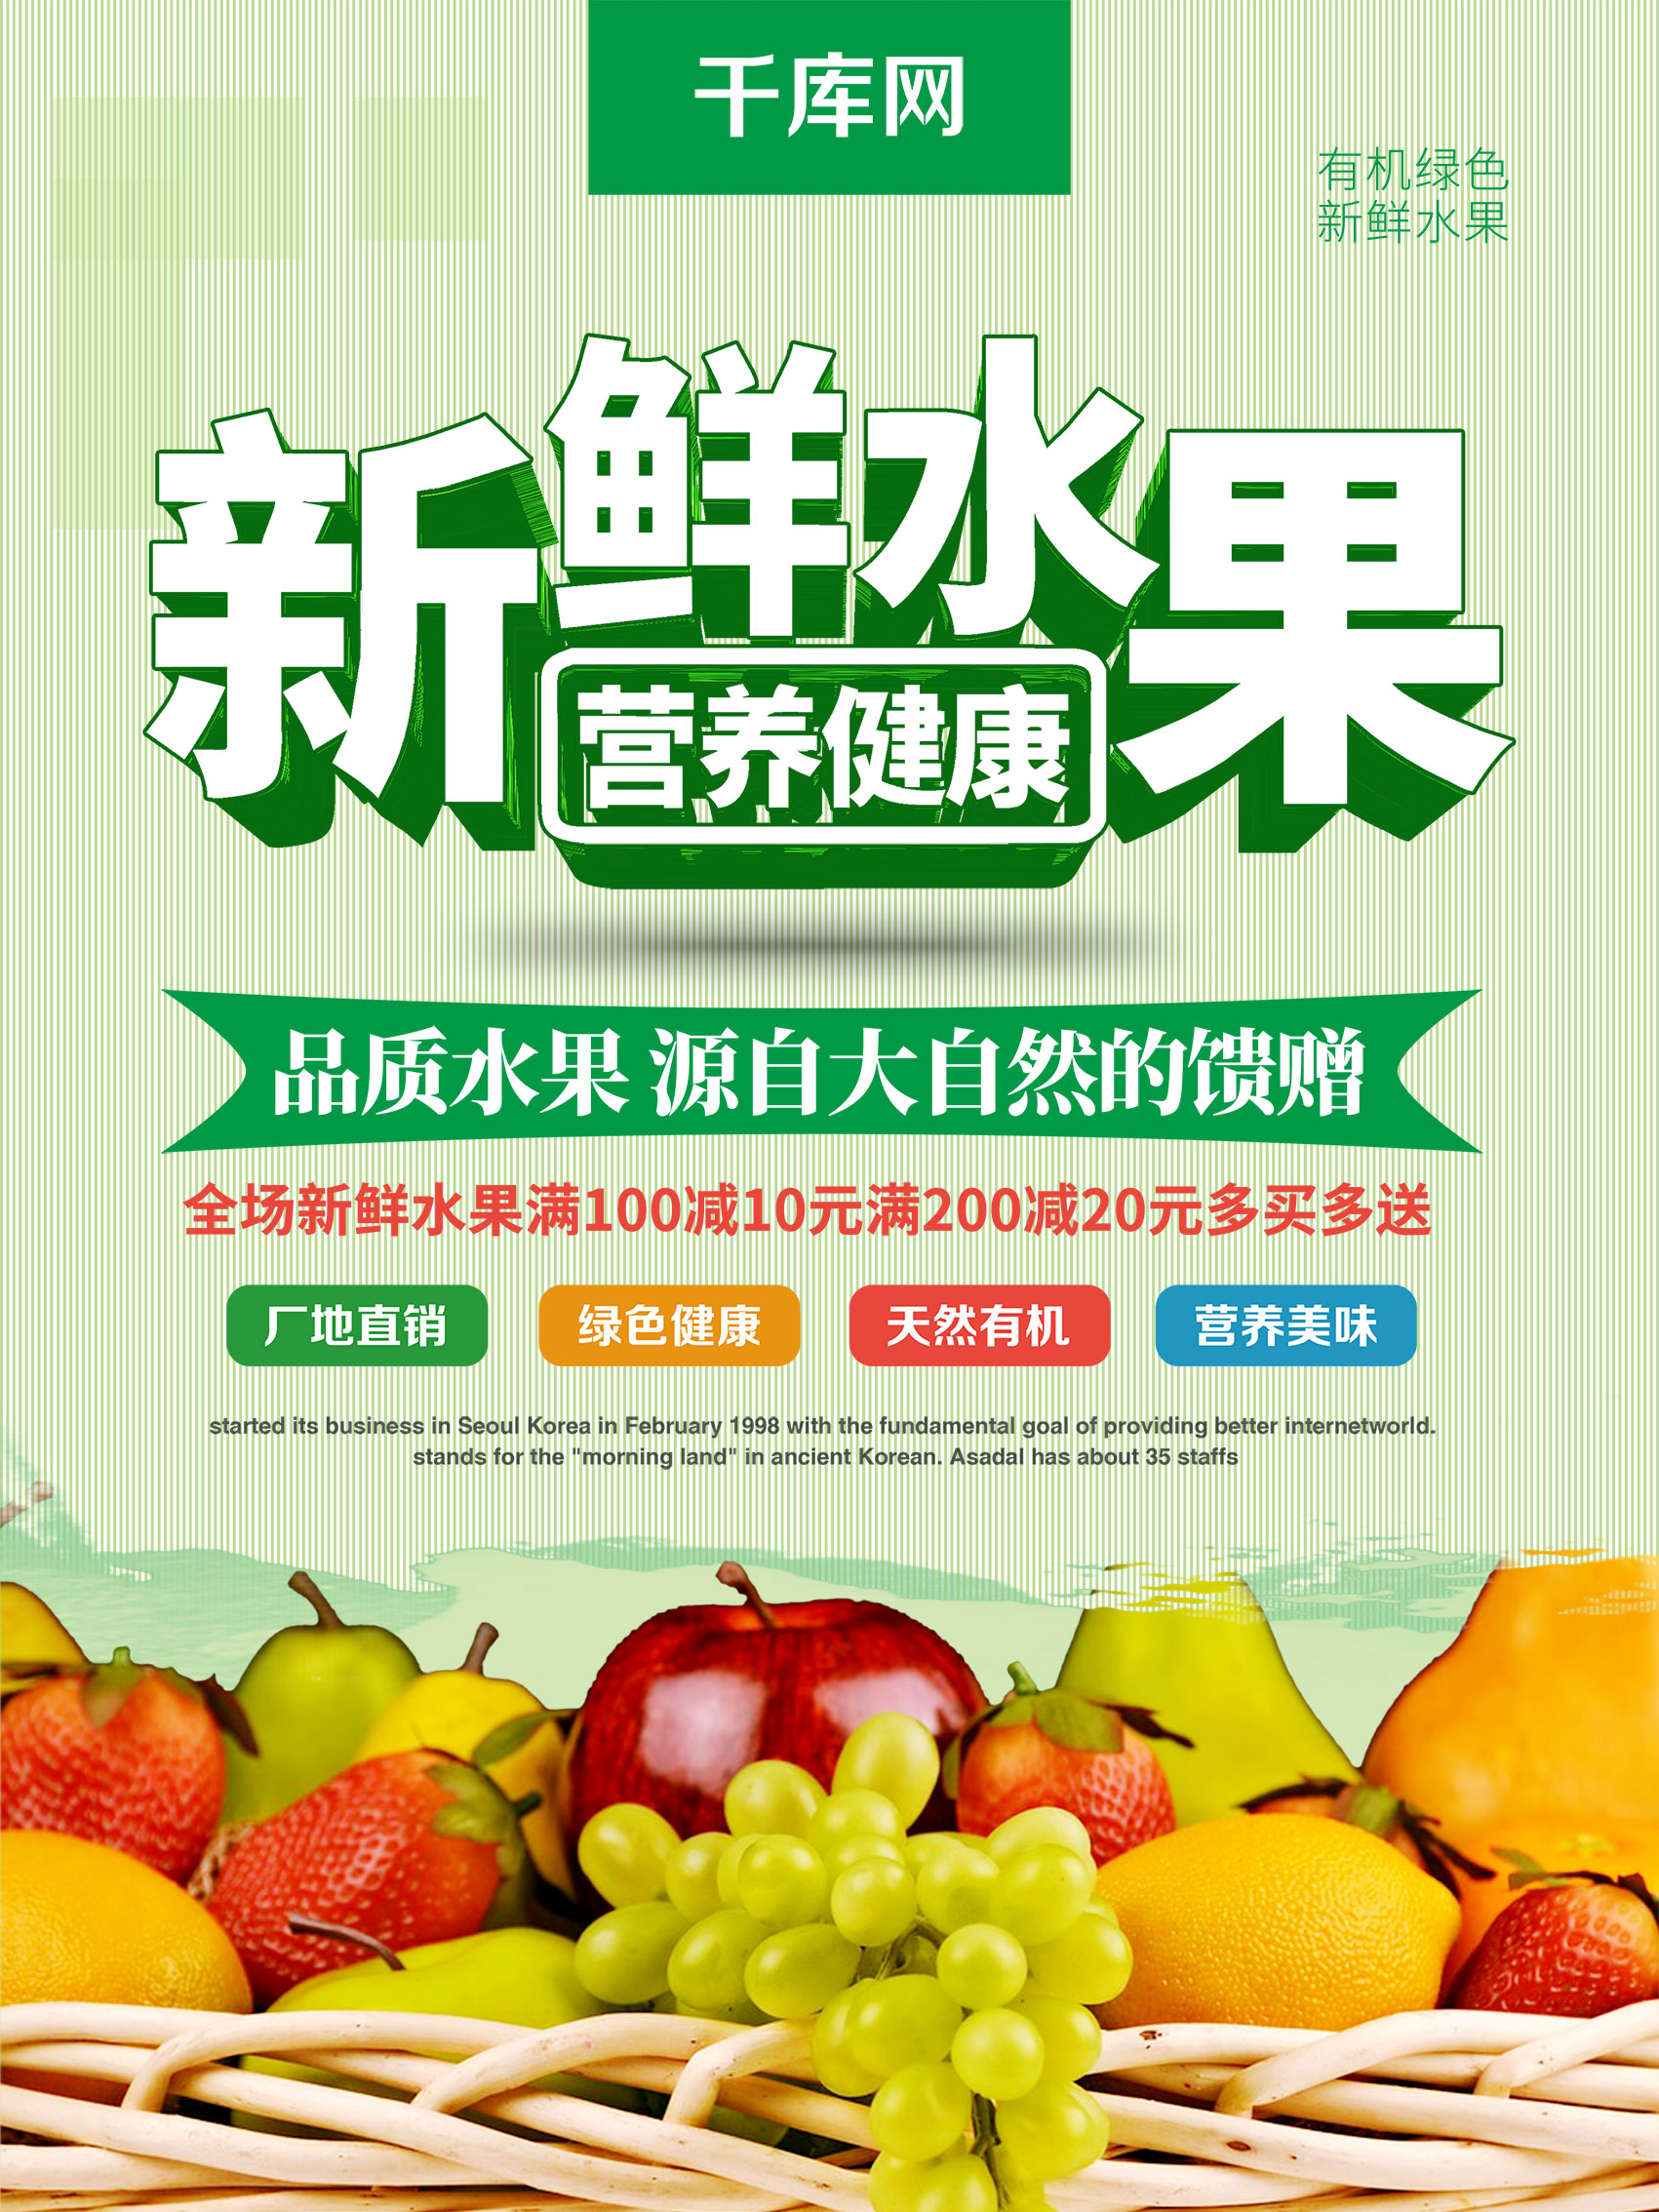 浅绿色简约风新鲜水果美食海报图片